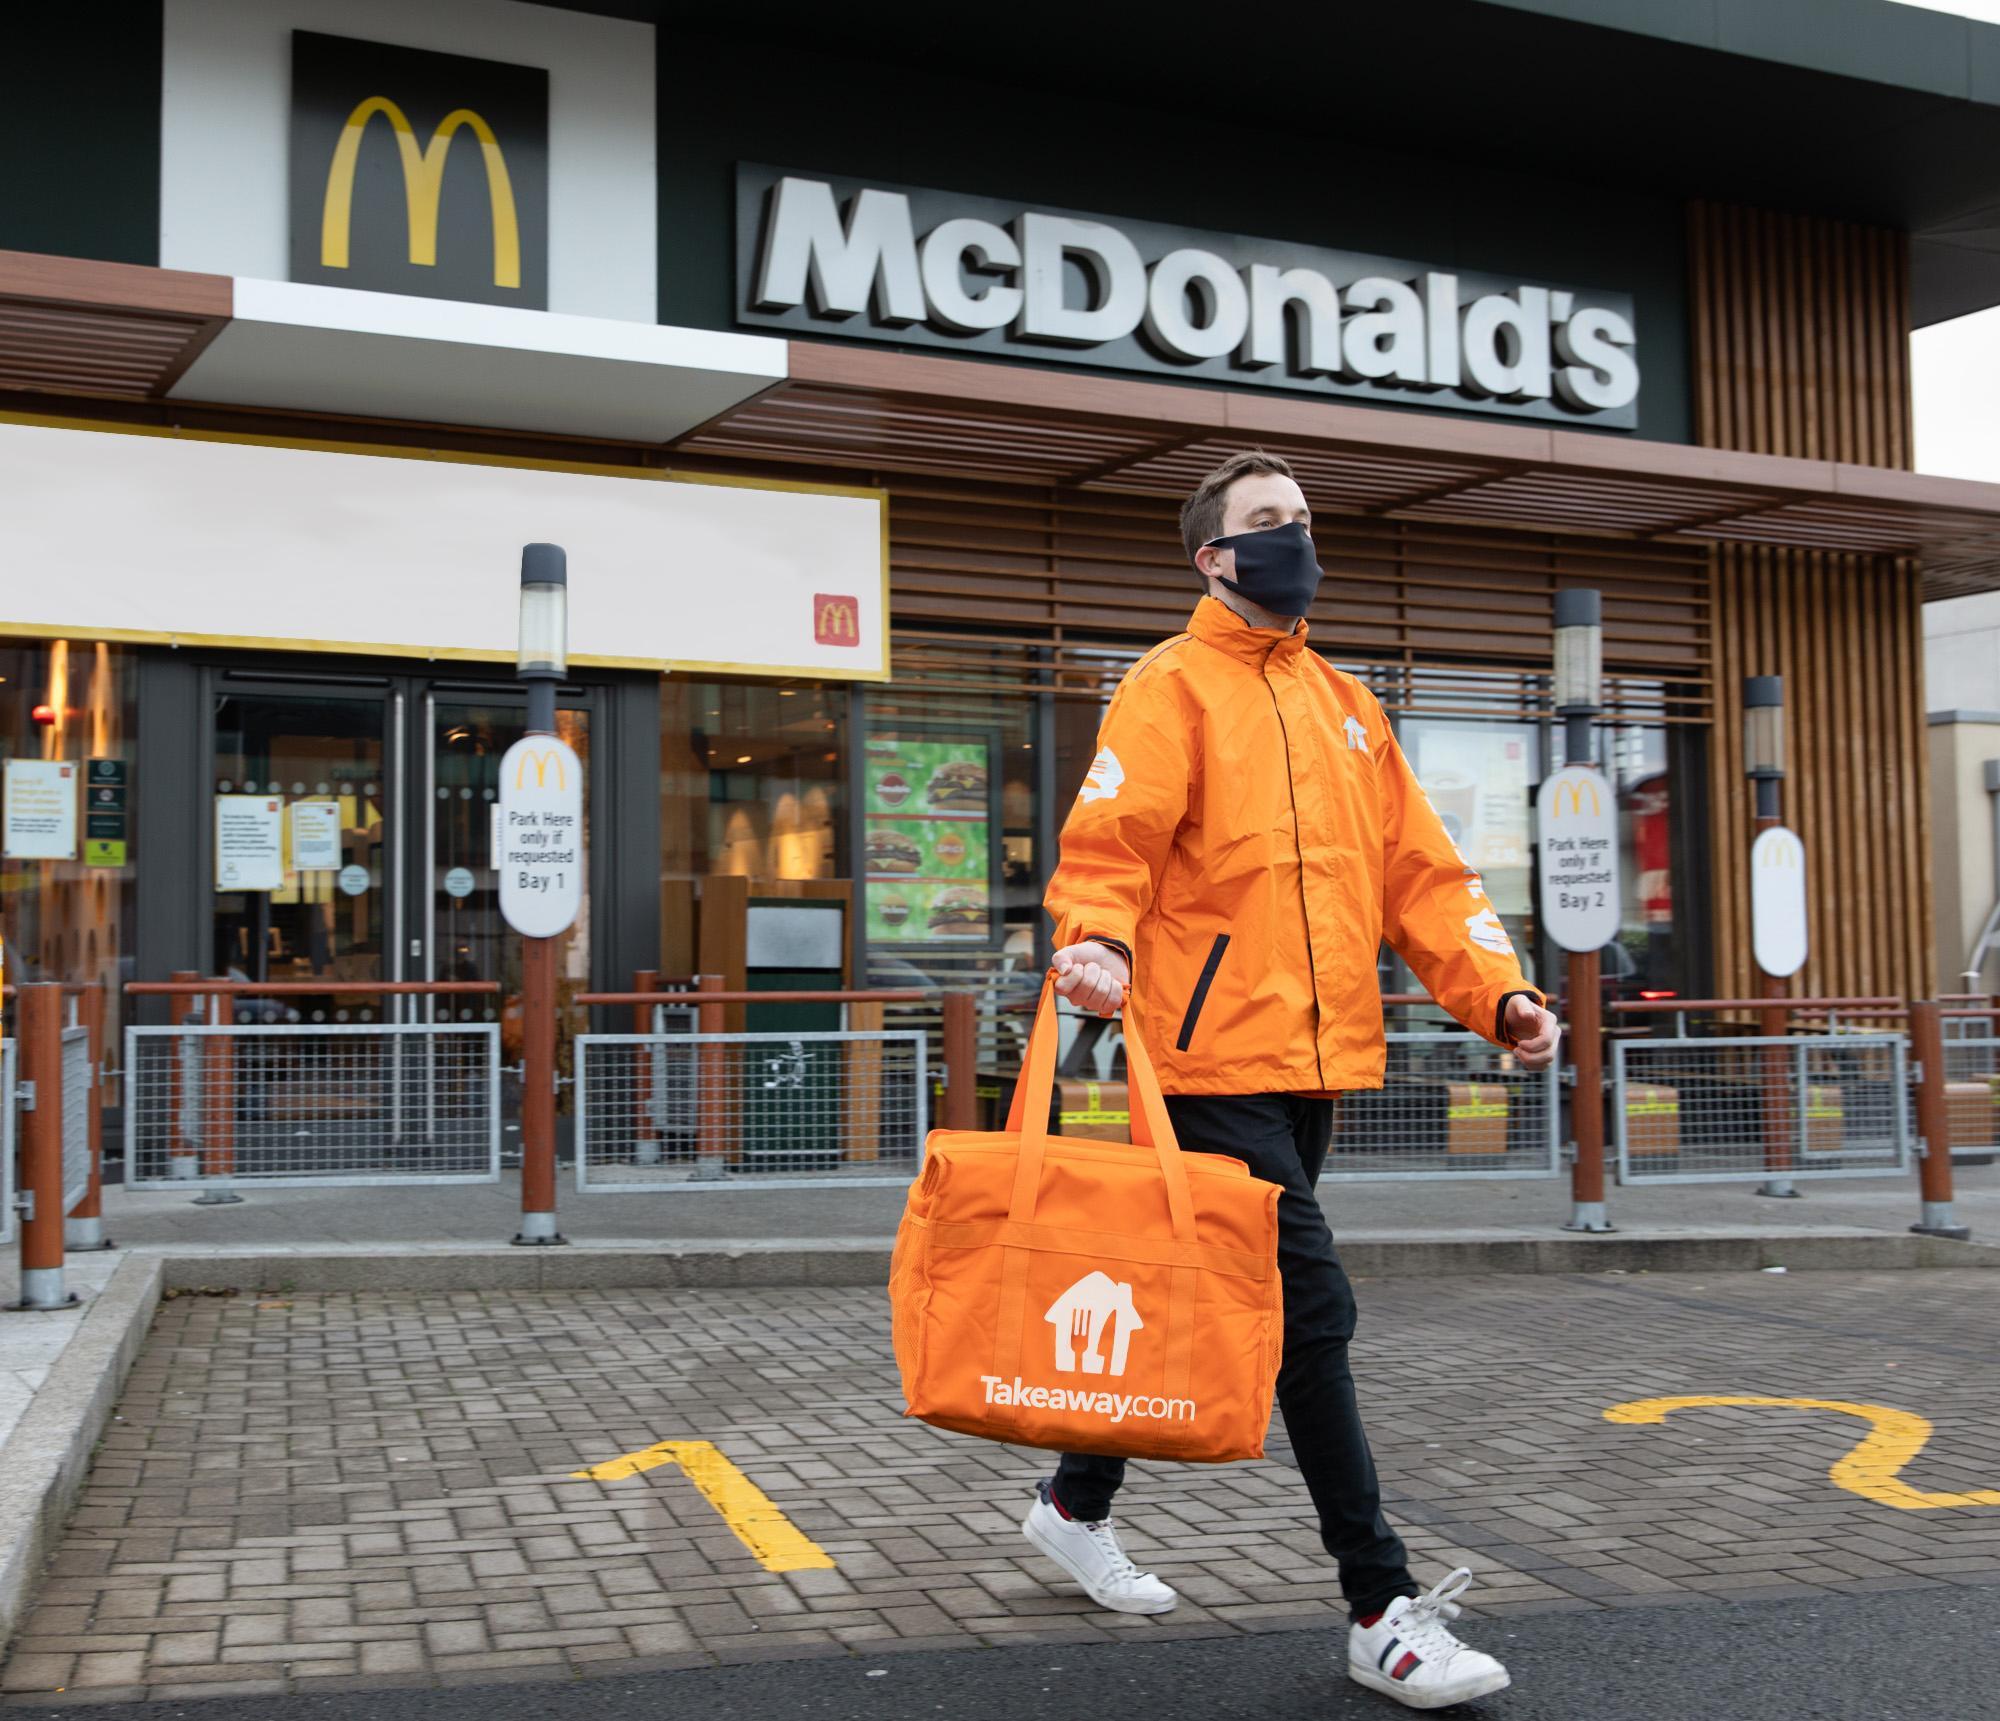 takeaway, Takeaway.com entrega McDonald’s sem taxas de entrega em 2021